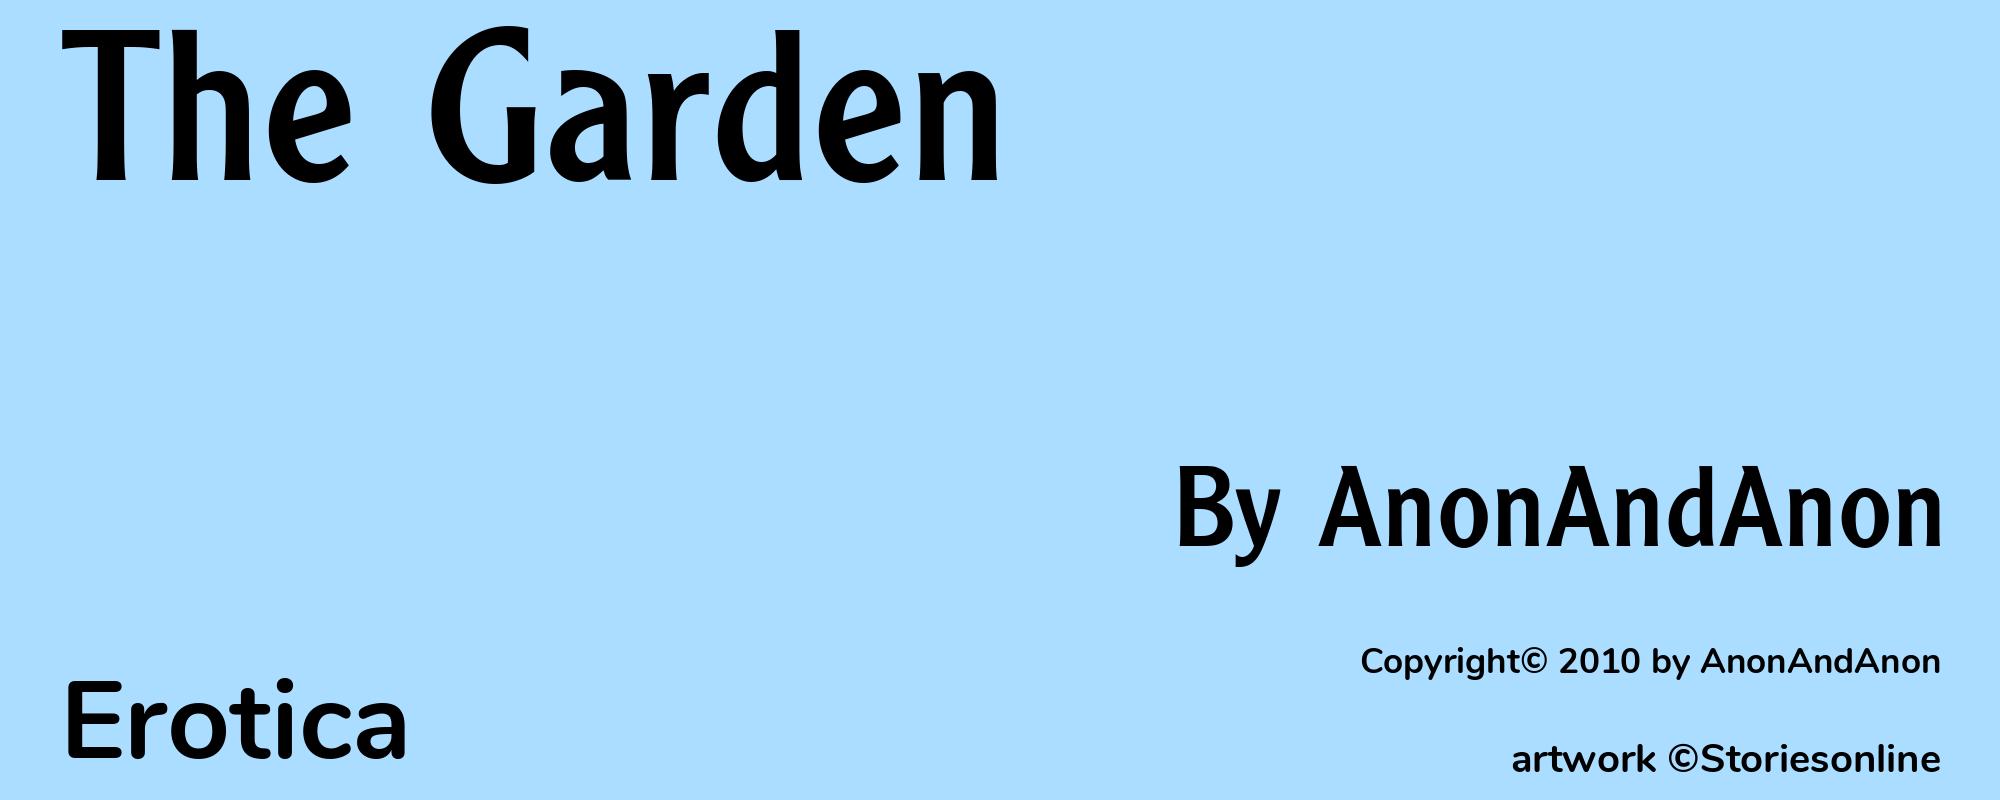 The Garden - Cover